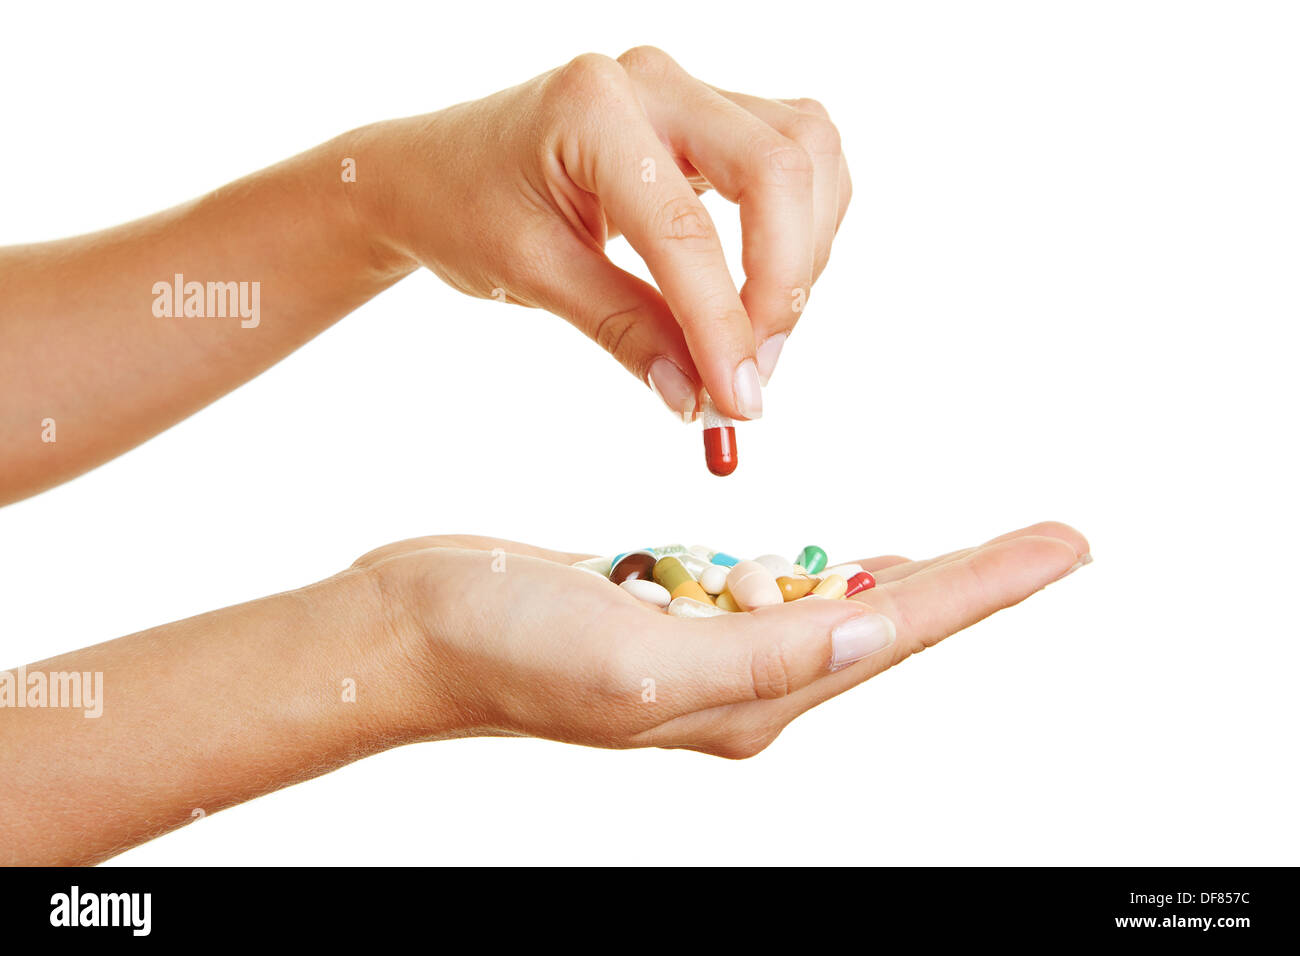 Femme main tenant une pilule rouge sur différents médicaments dans la paume de la main Banque D'Images